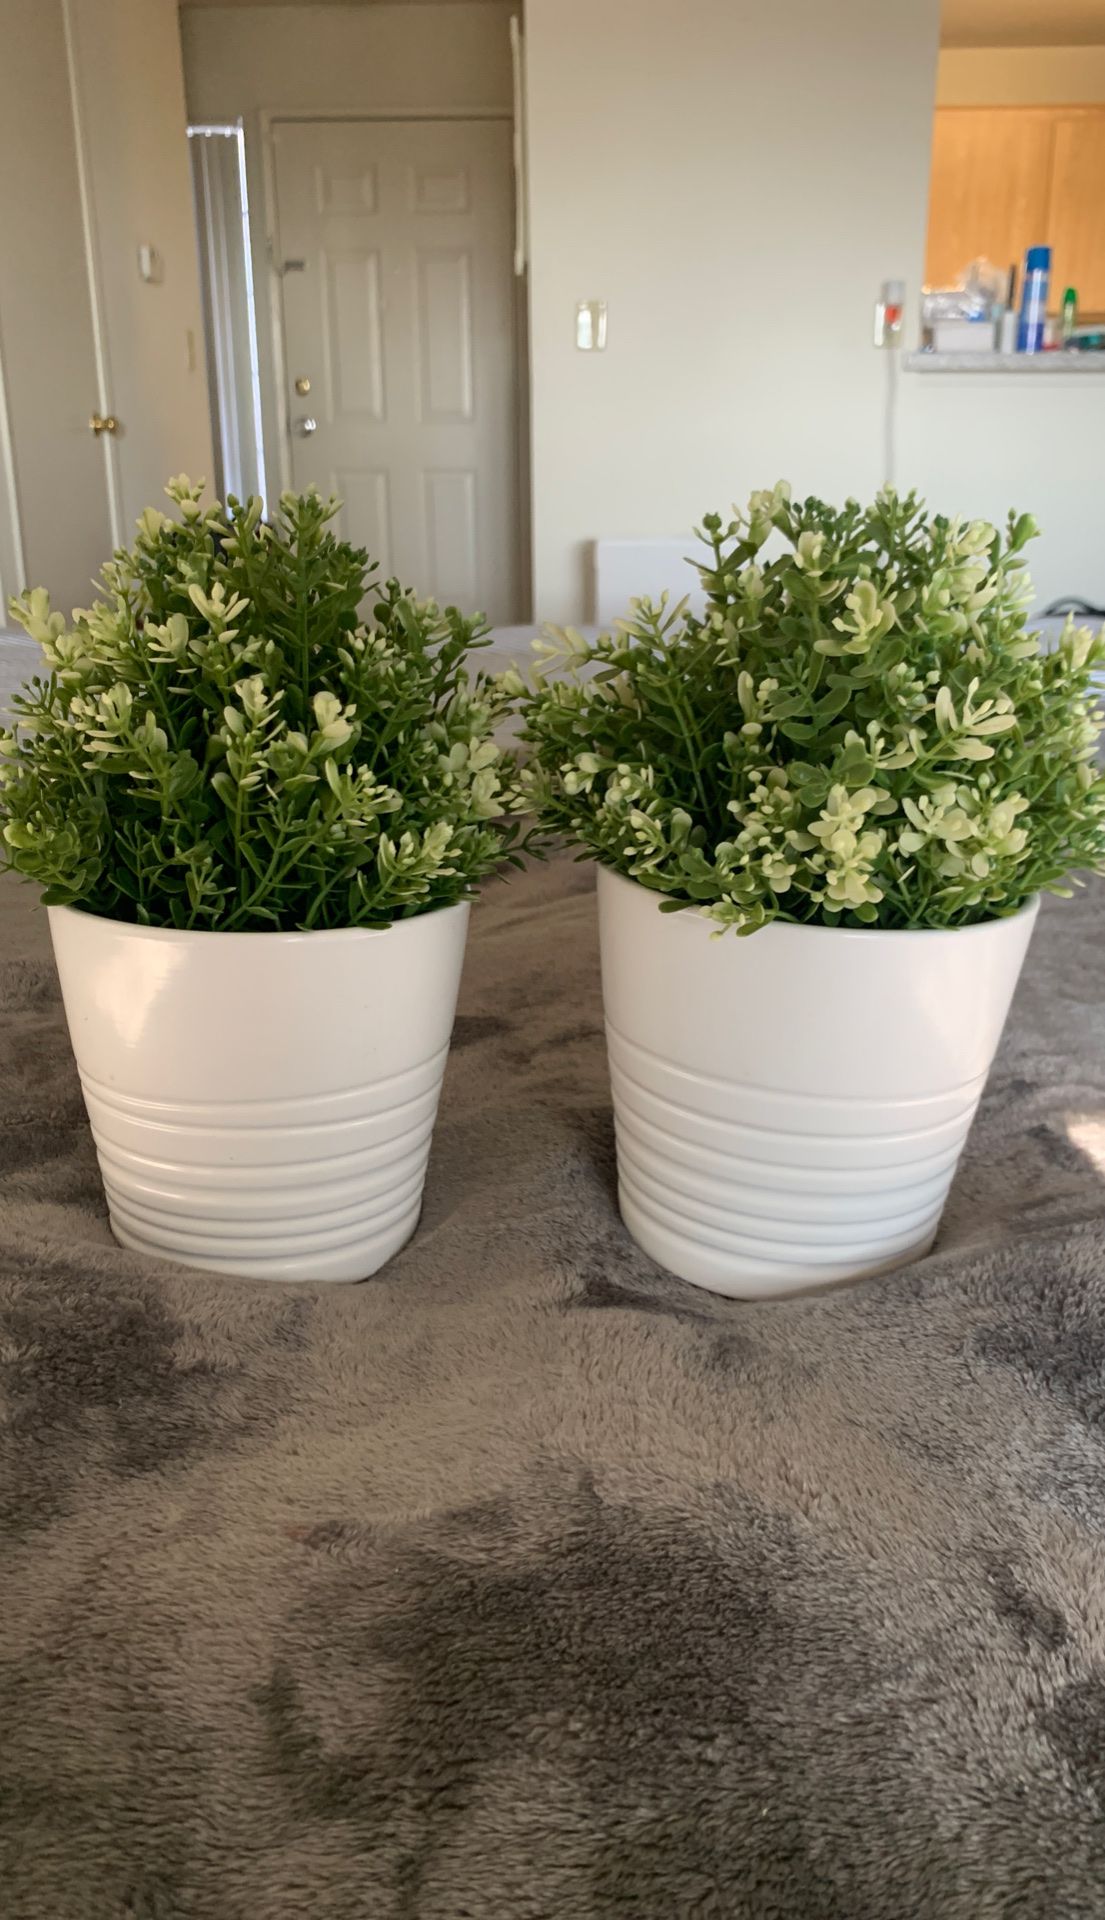 IKEA pots and plants